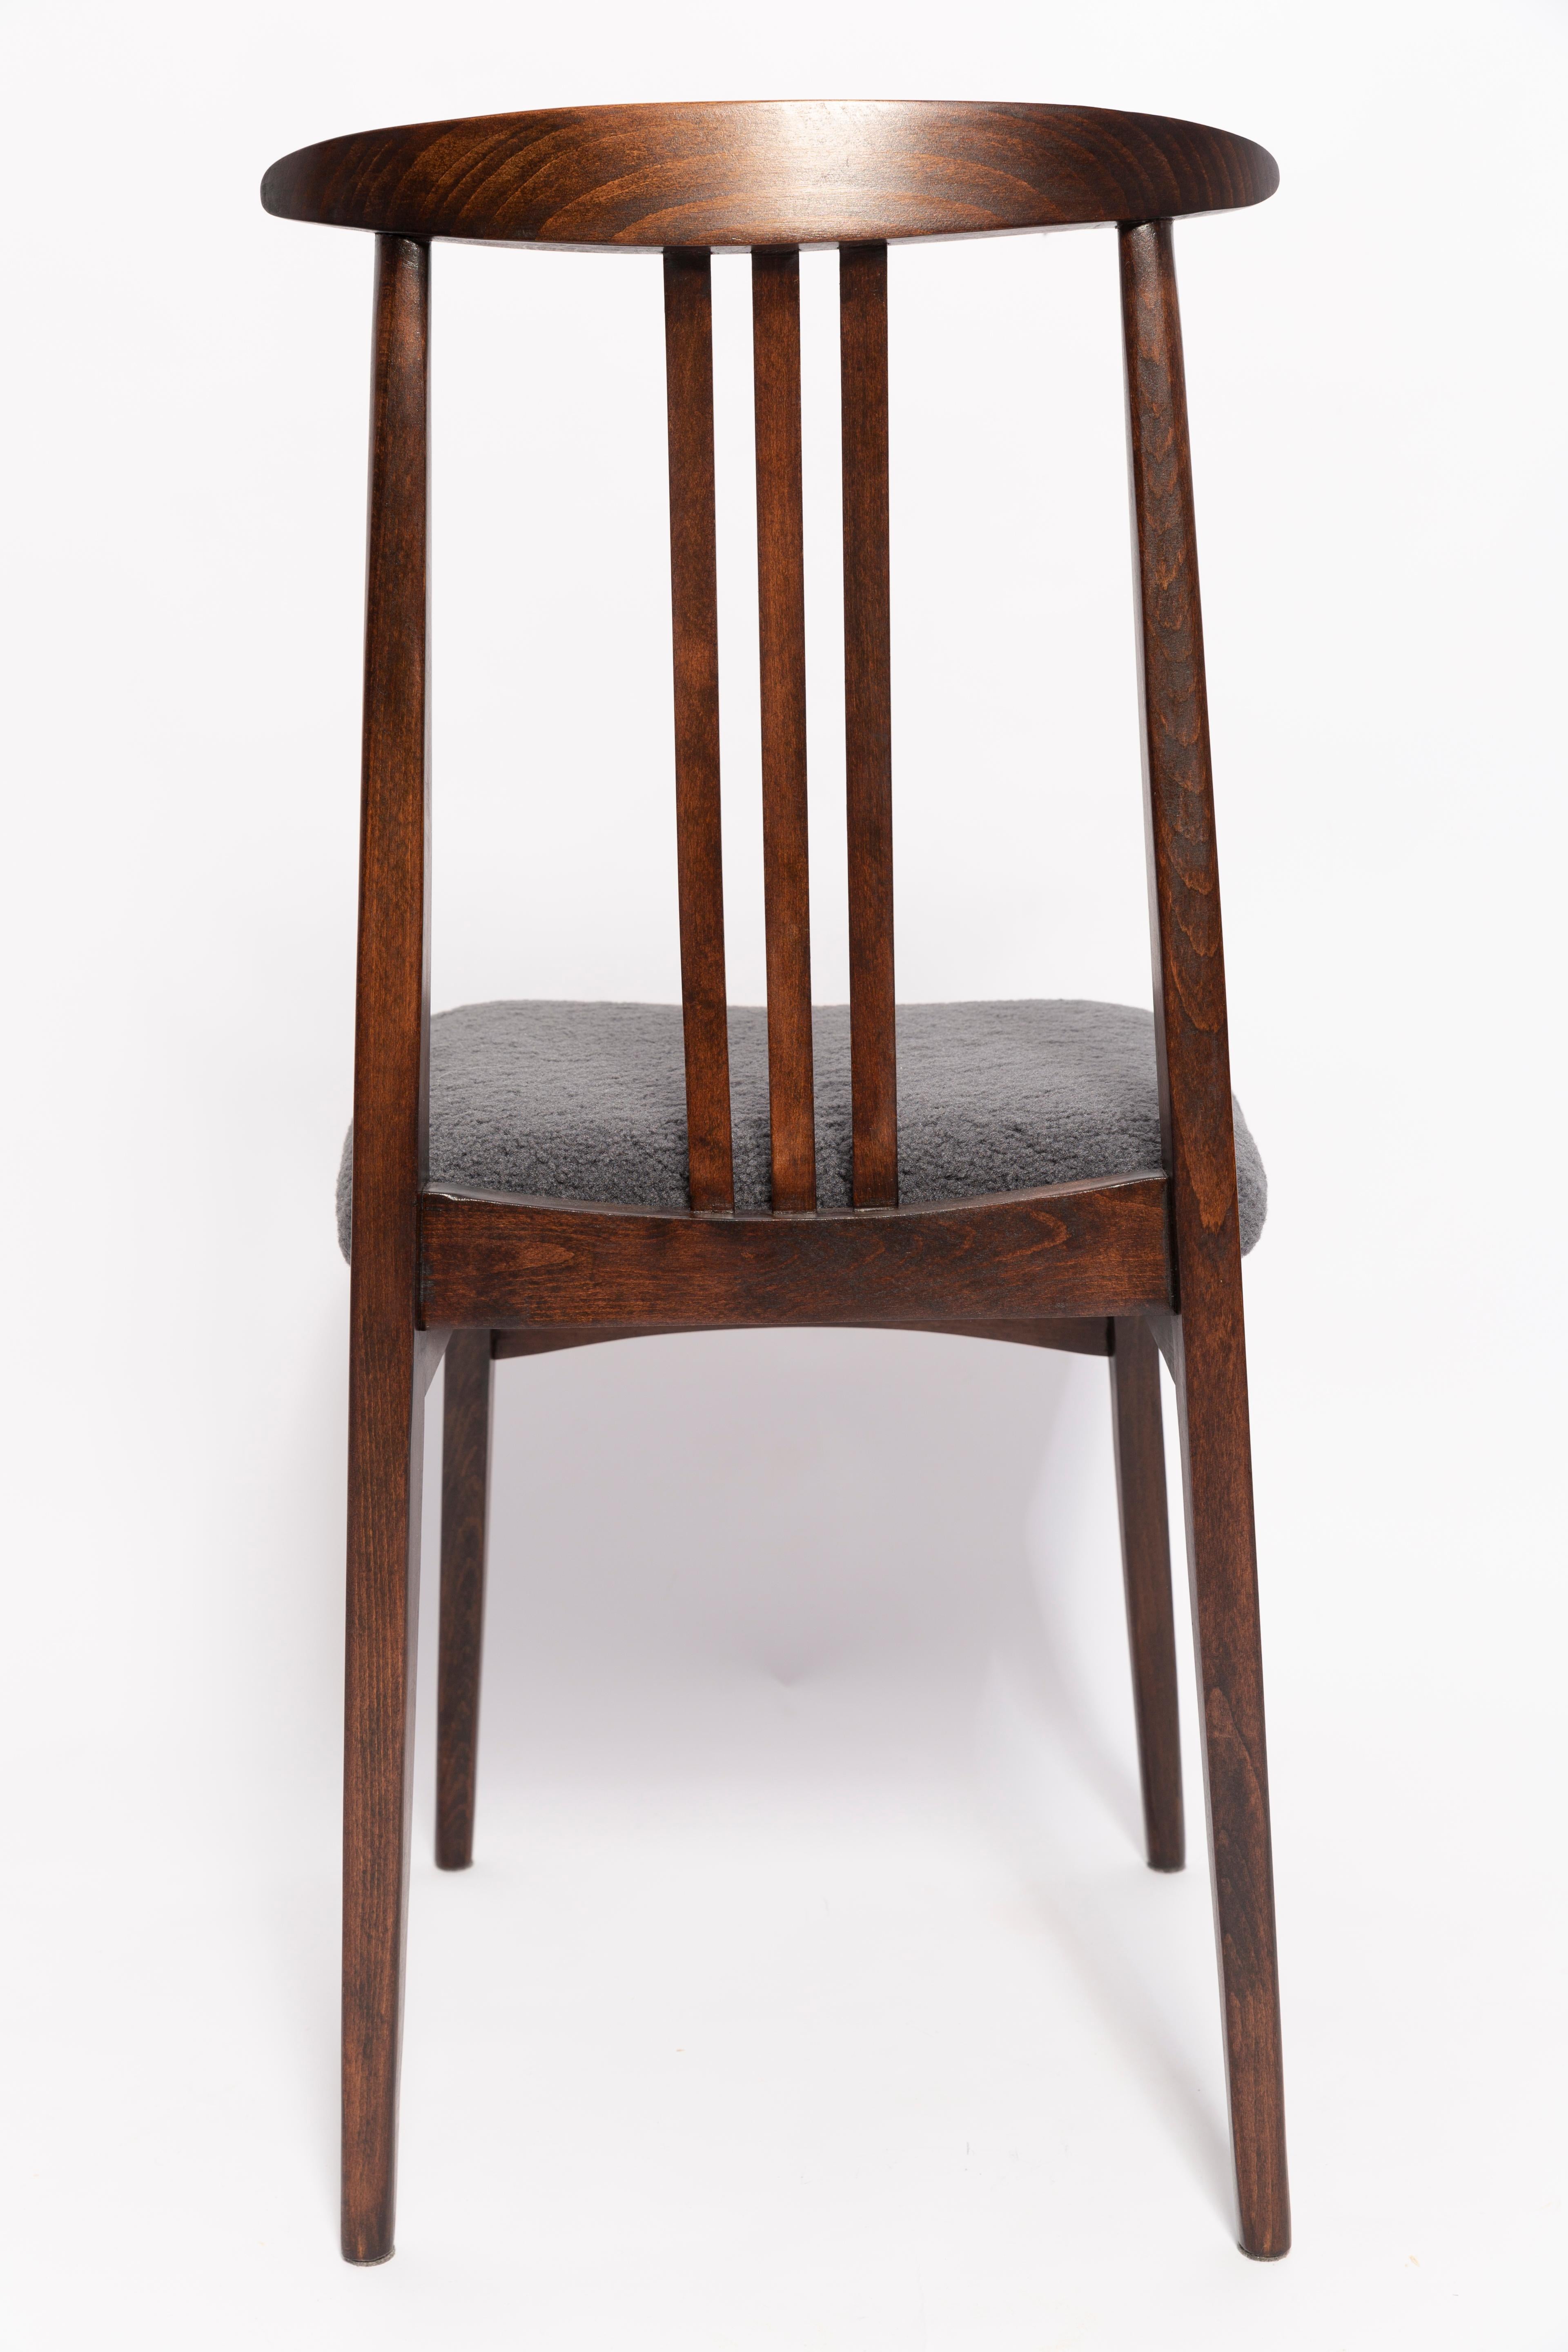 Twelve Mid-Century Graphite Boucle Chairs, Walnut Wood, M Zielinski, Europe 1960 In Excellent Condition For Sale In 05-080 Hornowek, PL